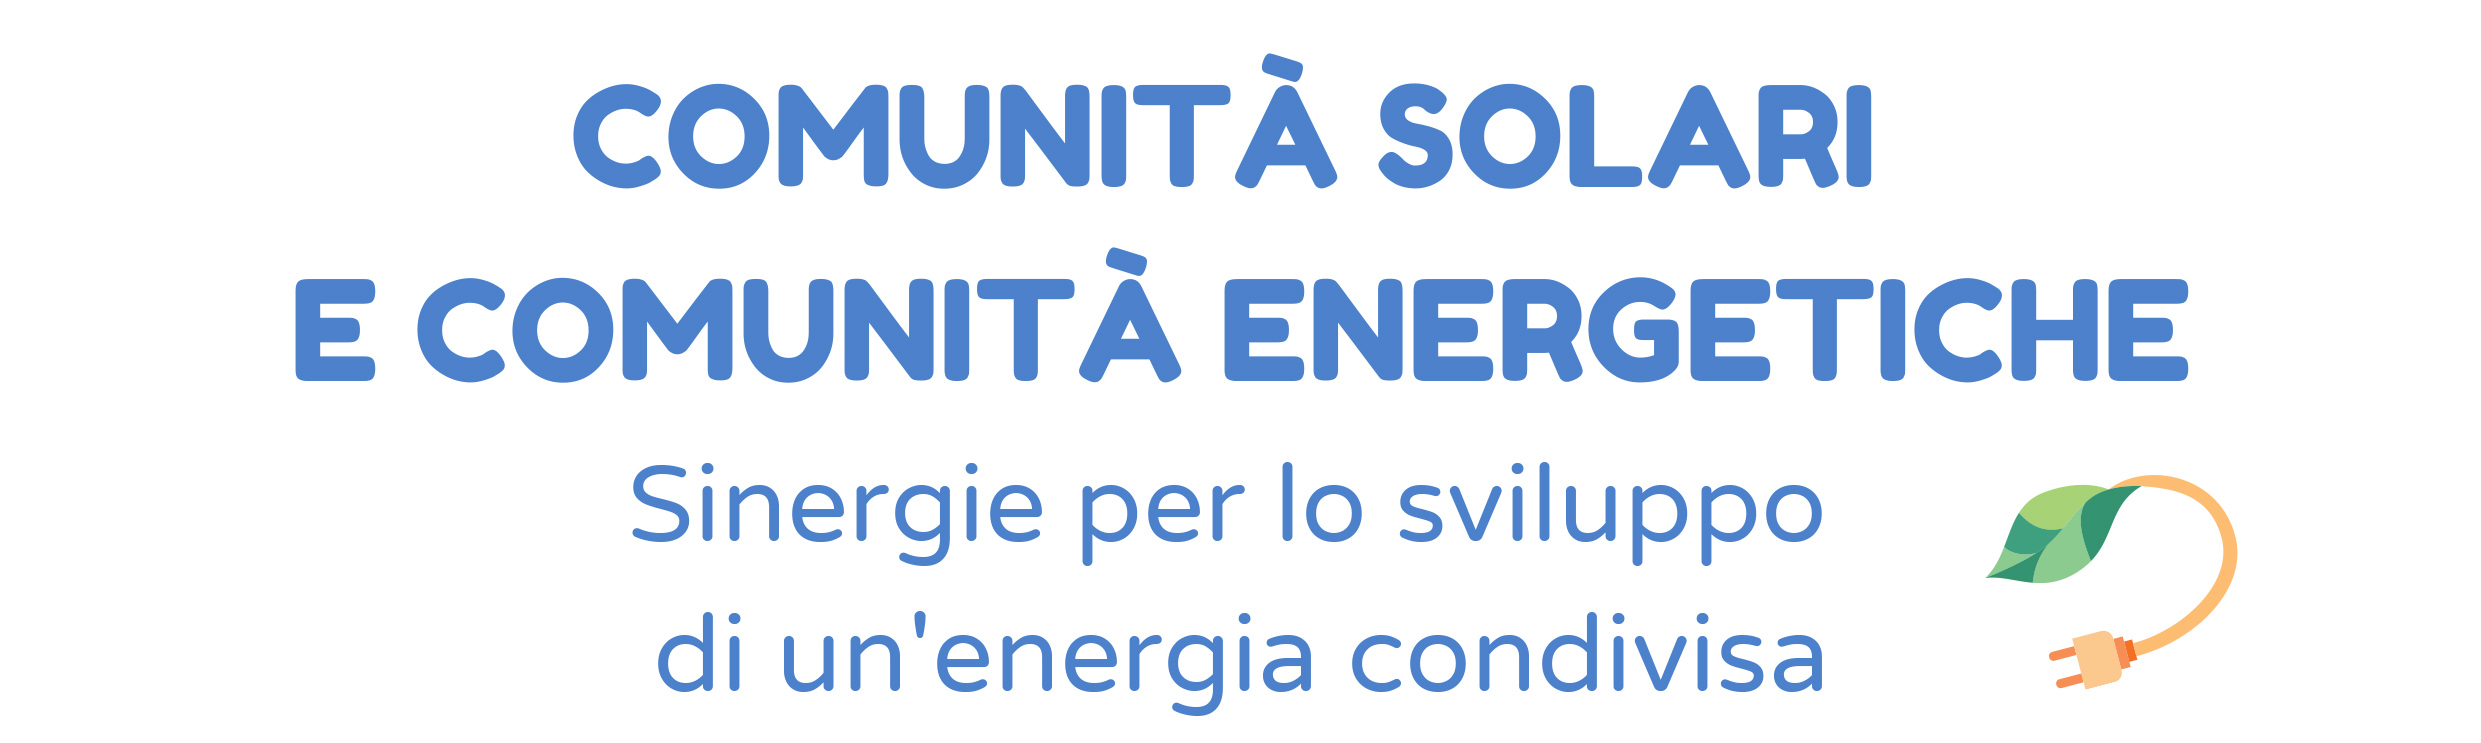 Comunità solari e comunità energetiche